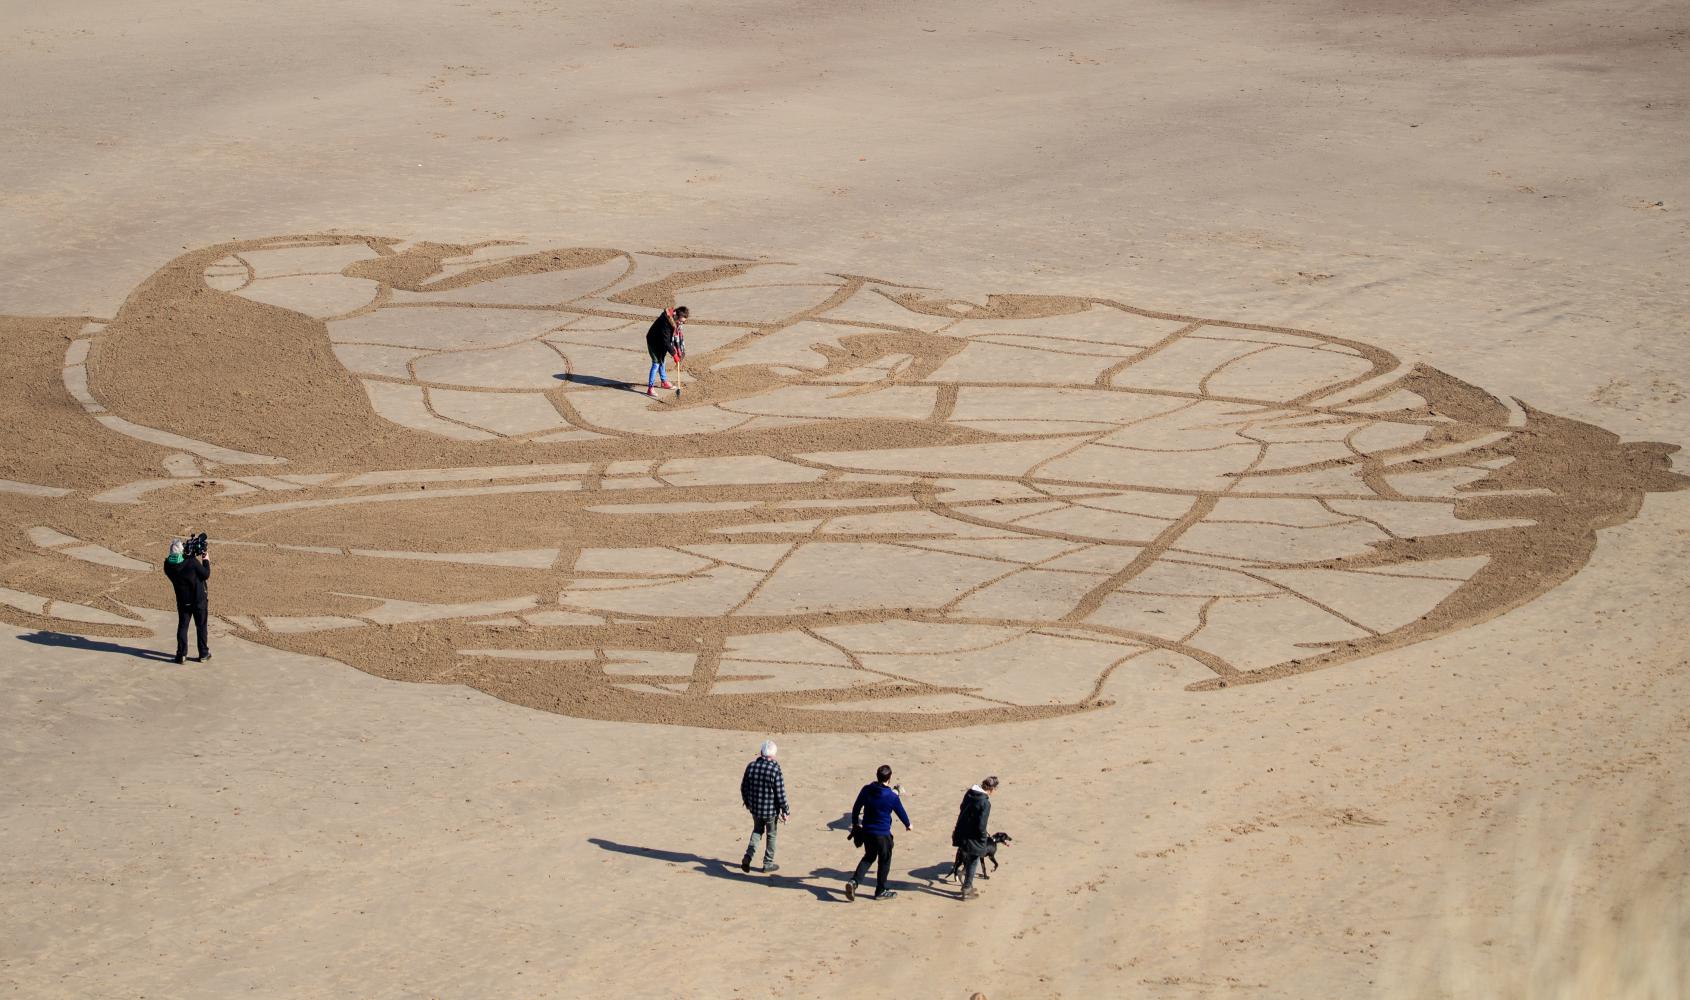 Ein etwa 60 Meter breites Sandporträt der zwölfährigen Ansha aus Äthiopien am britischen Whitby Beach. Das Bild soll zeigen, wie der Zugang zu Wasser und der Klimawandel die ärmsten Menschen der Welt bedroht